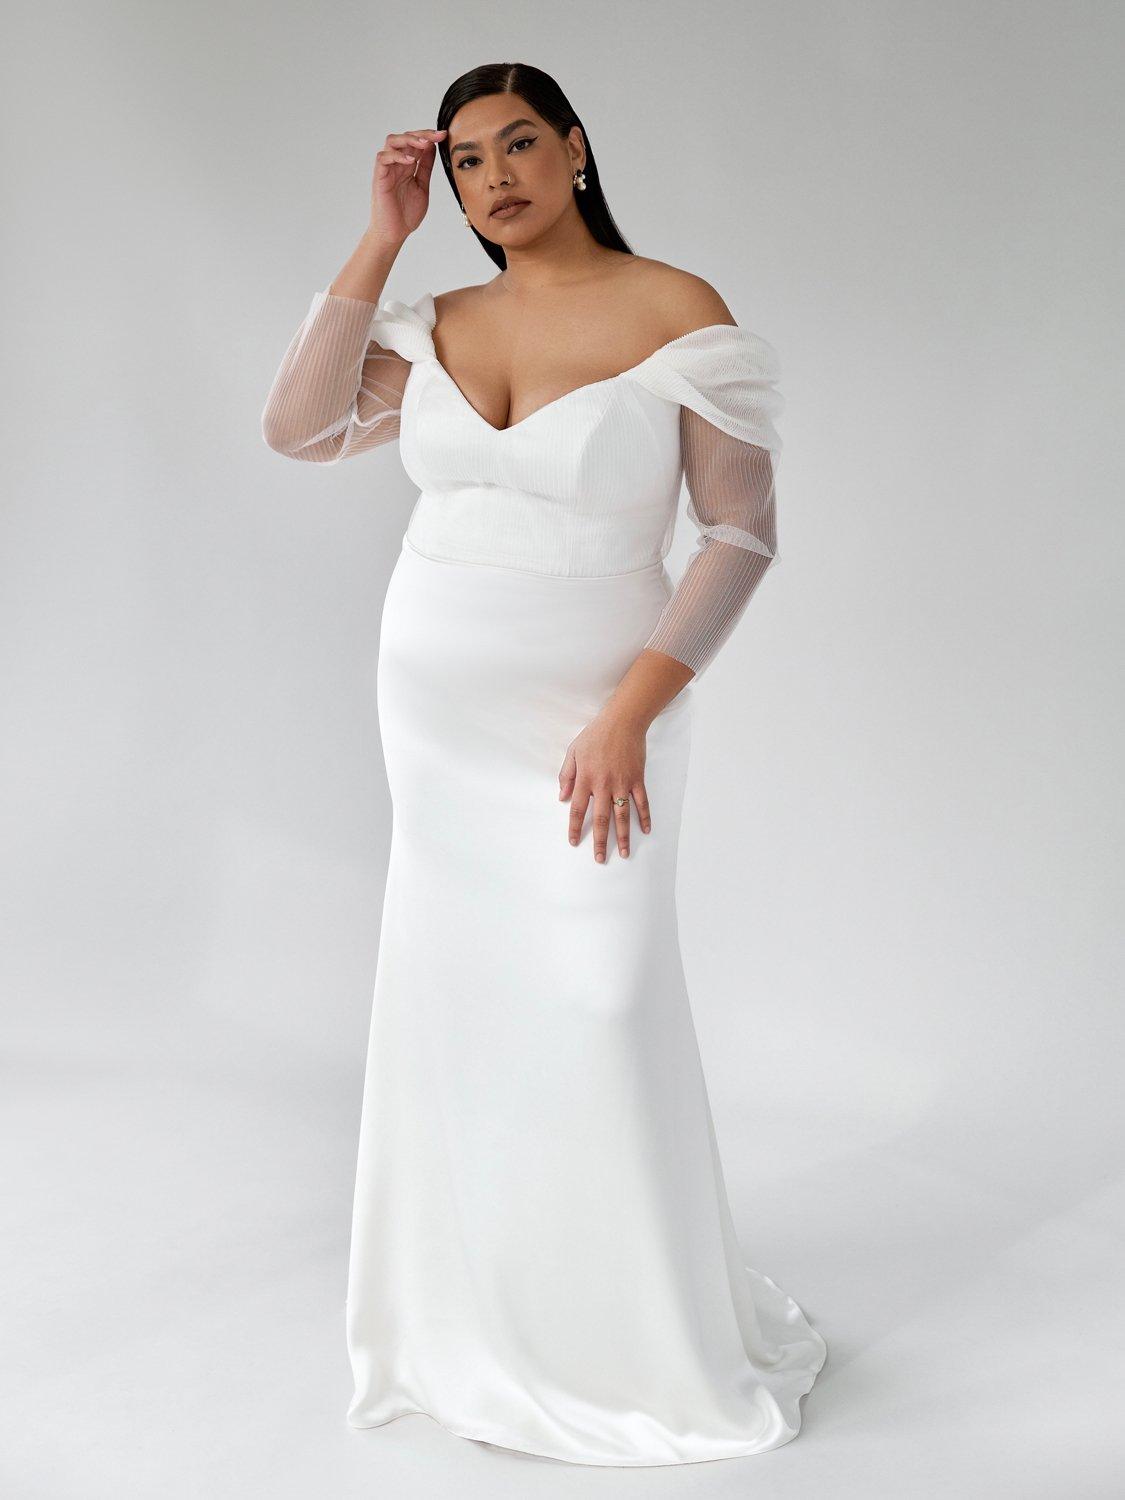 lide konstruktion eksotisk 31 Plus Size Wedding Dress and Curvy Bridal Gowns - hitched.co.uk -  hitched.co.uk